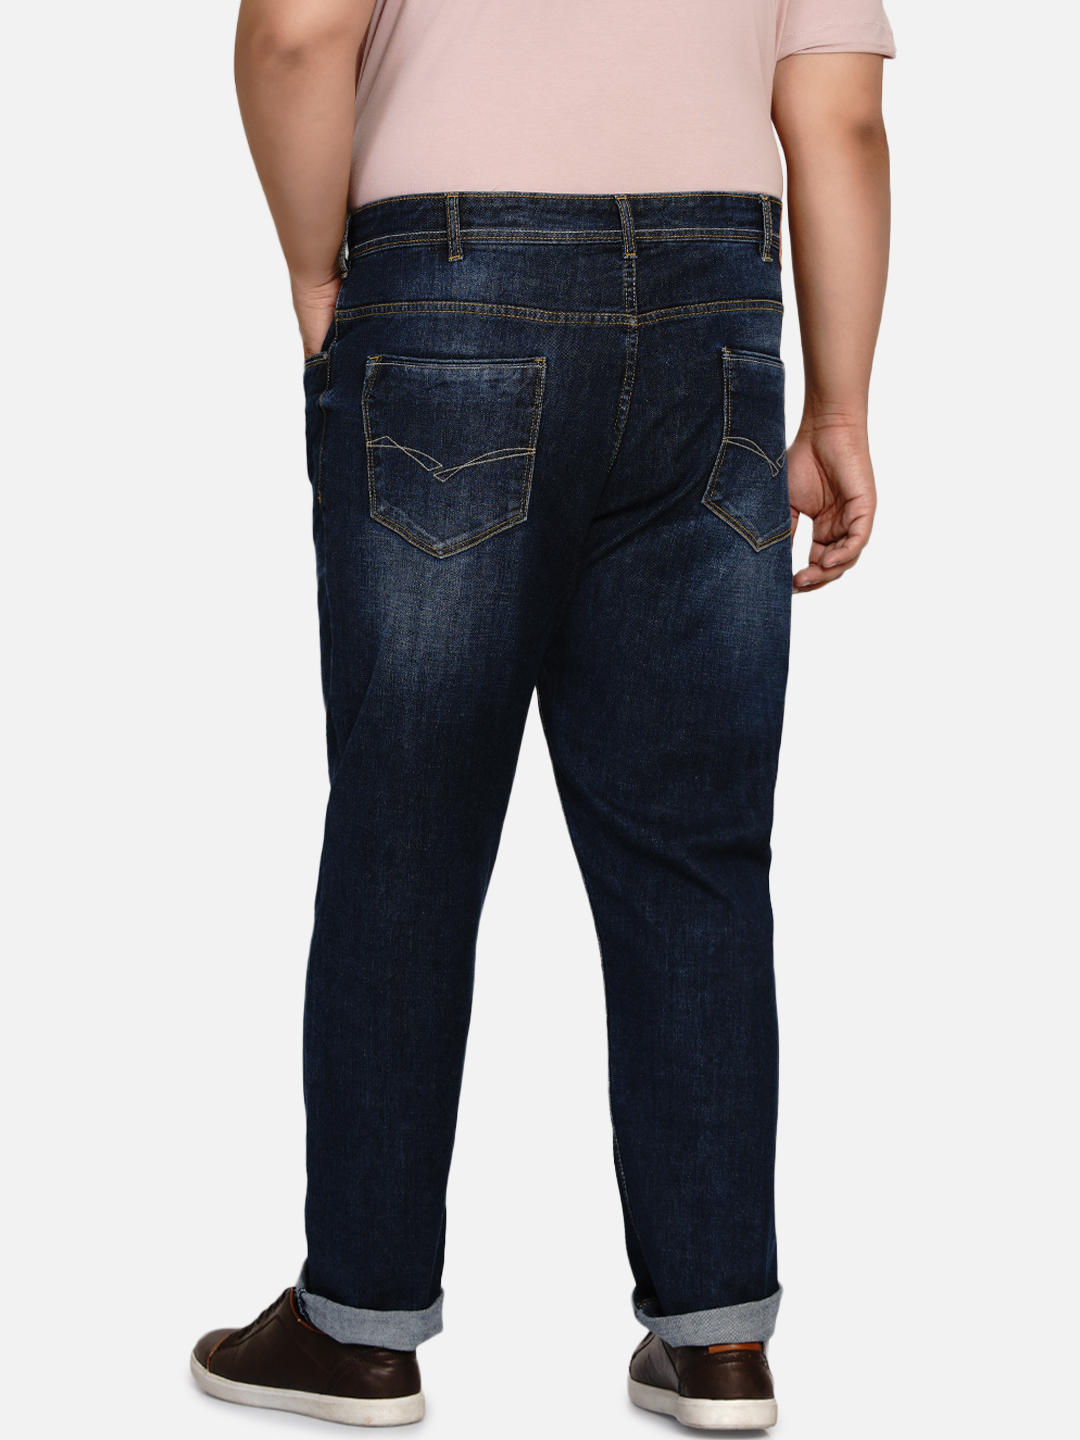 affordables/jeans/EJPJ2030/ejpj2030-5.jpg